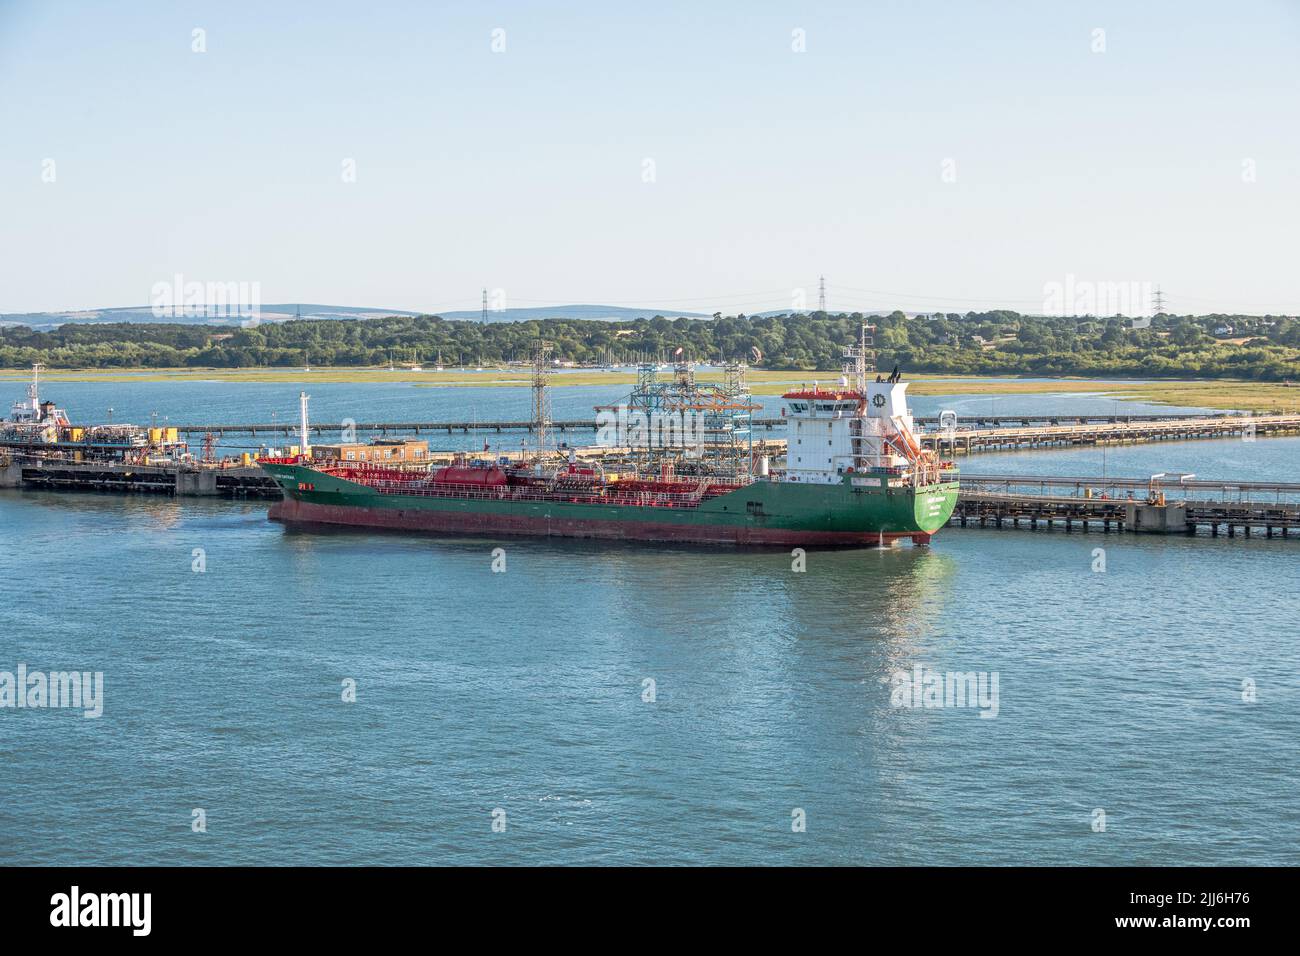 Habip Bayrak, buque tanque de productos químicos y petroleros atracado en la refinería de petróleo de Southampton y en el sitio de almacenamiento de gas. Foto de stock